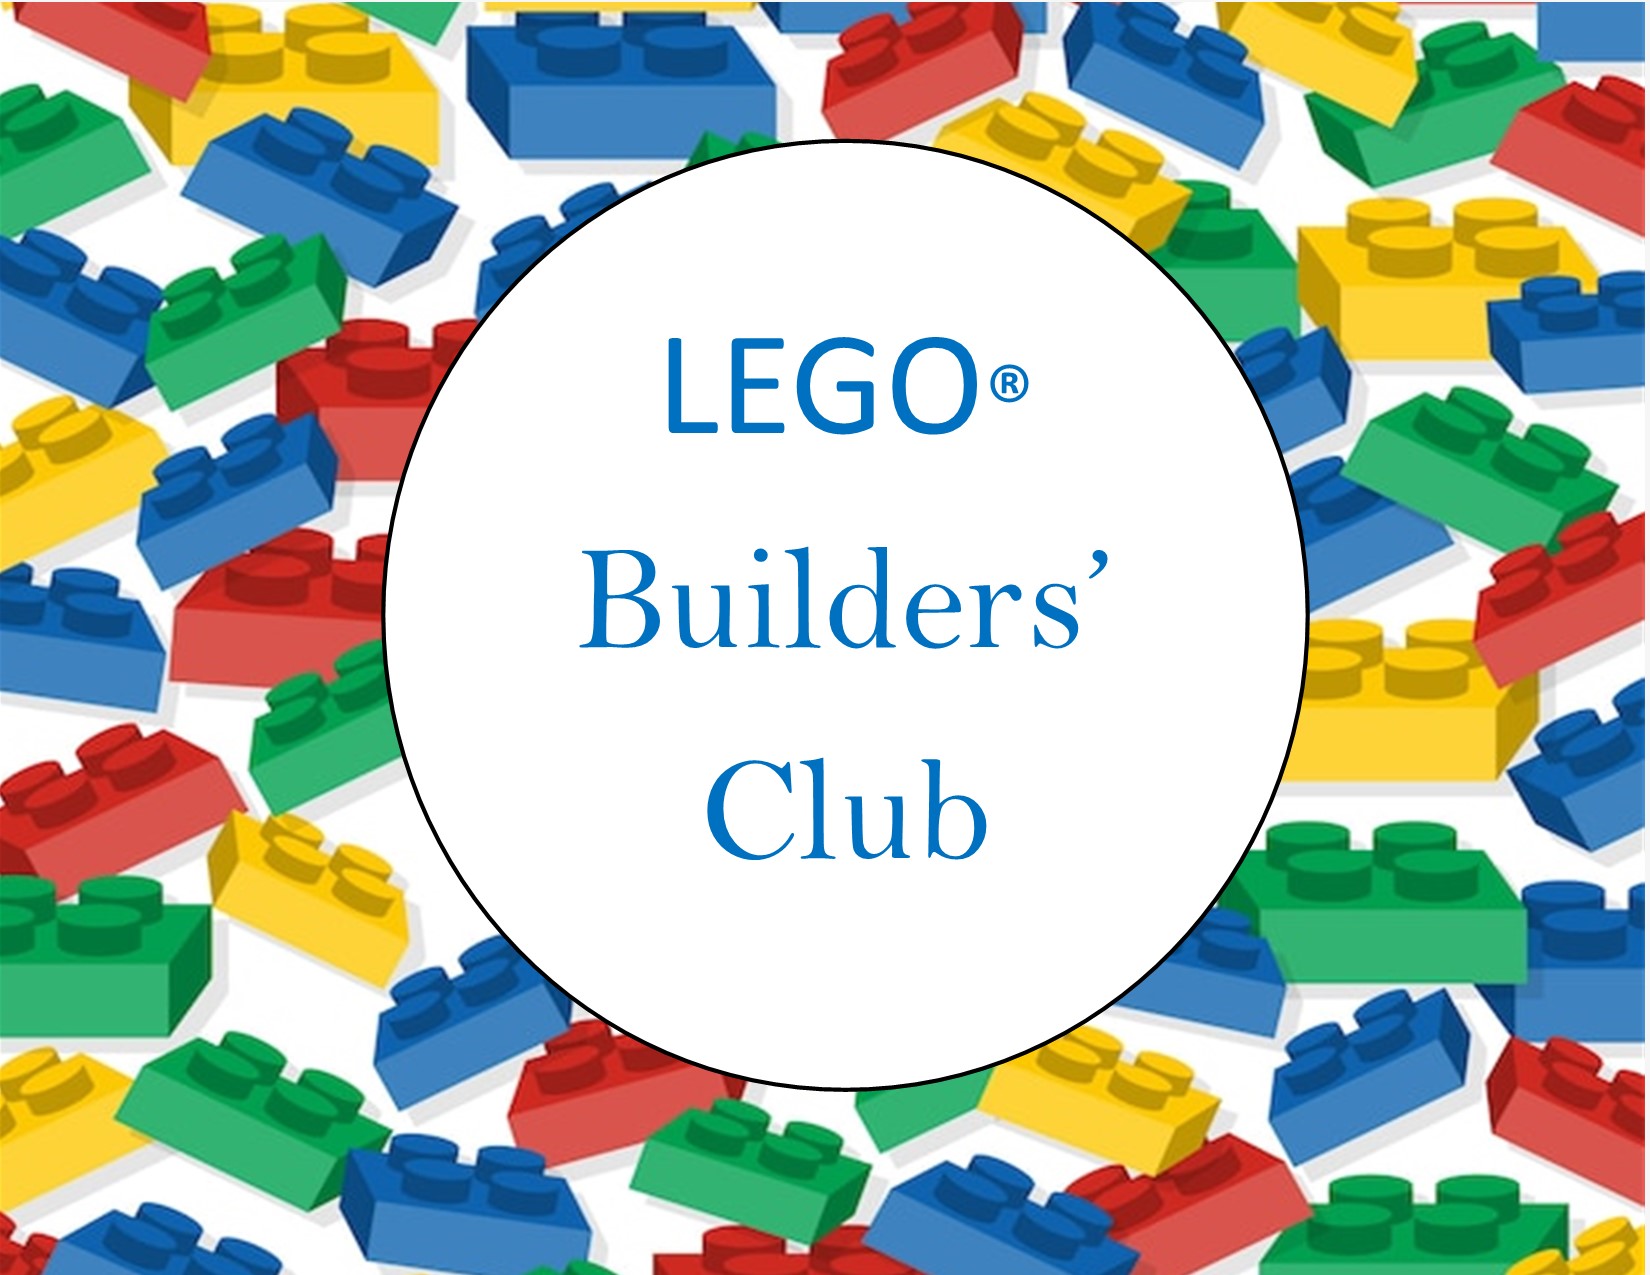 LEGO Builders' club